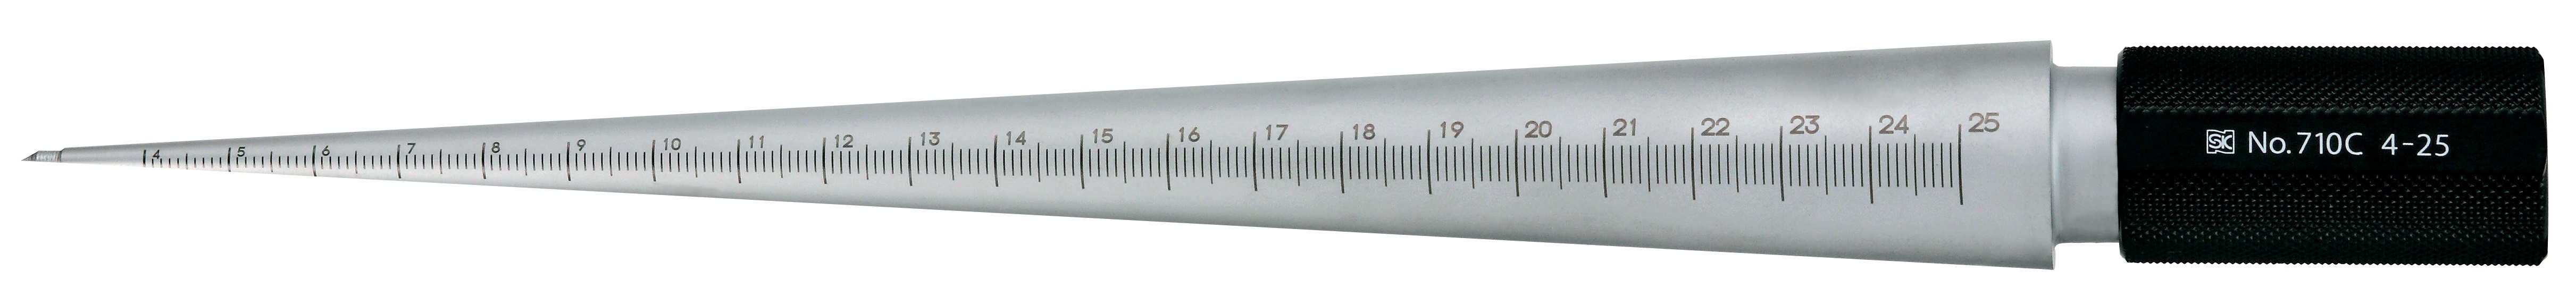 Calibres cónicos - cilíndricos para medir el tamaño del agujero, acabado plateado, TPG 710 TPG-710B